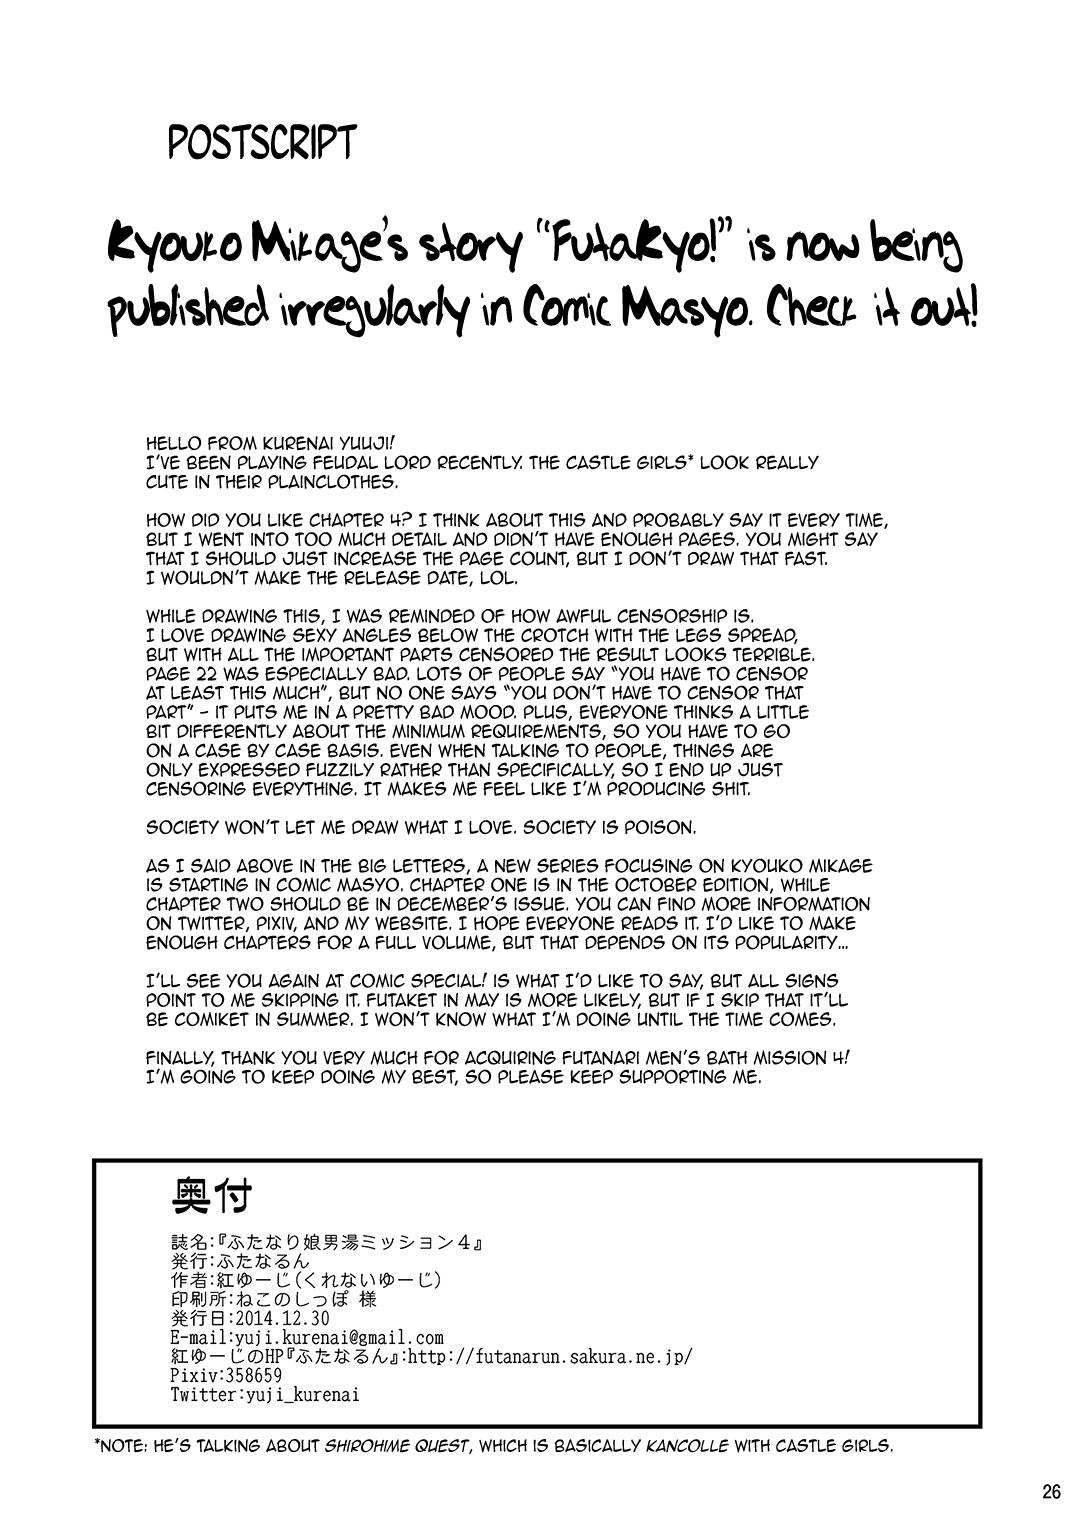 Futanari Musume Otokoyu Mission 4 | Futanari Men's Bath Mission 4 25